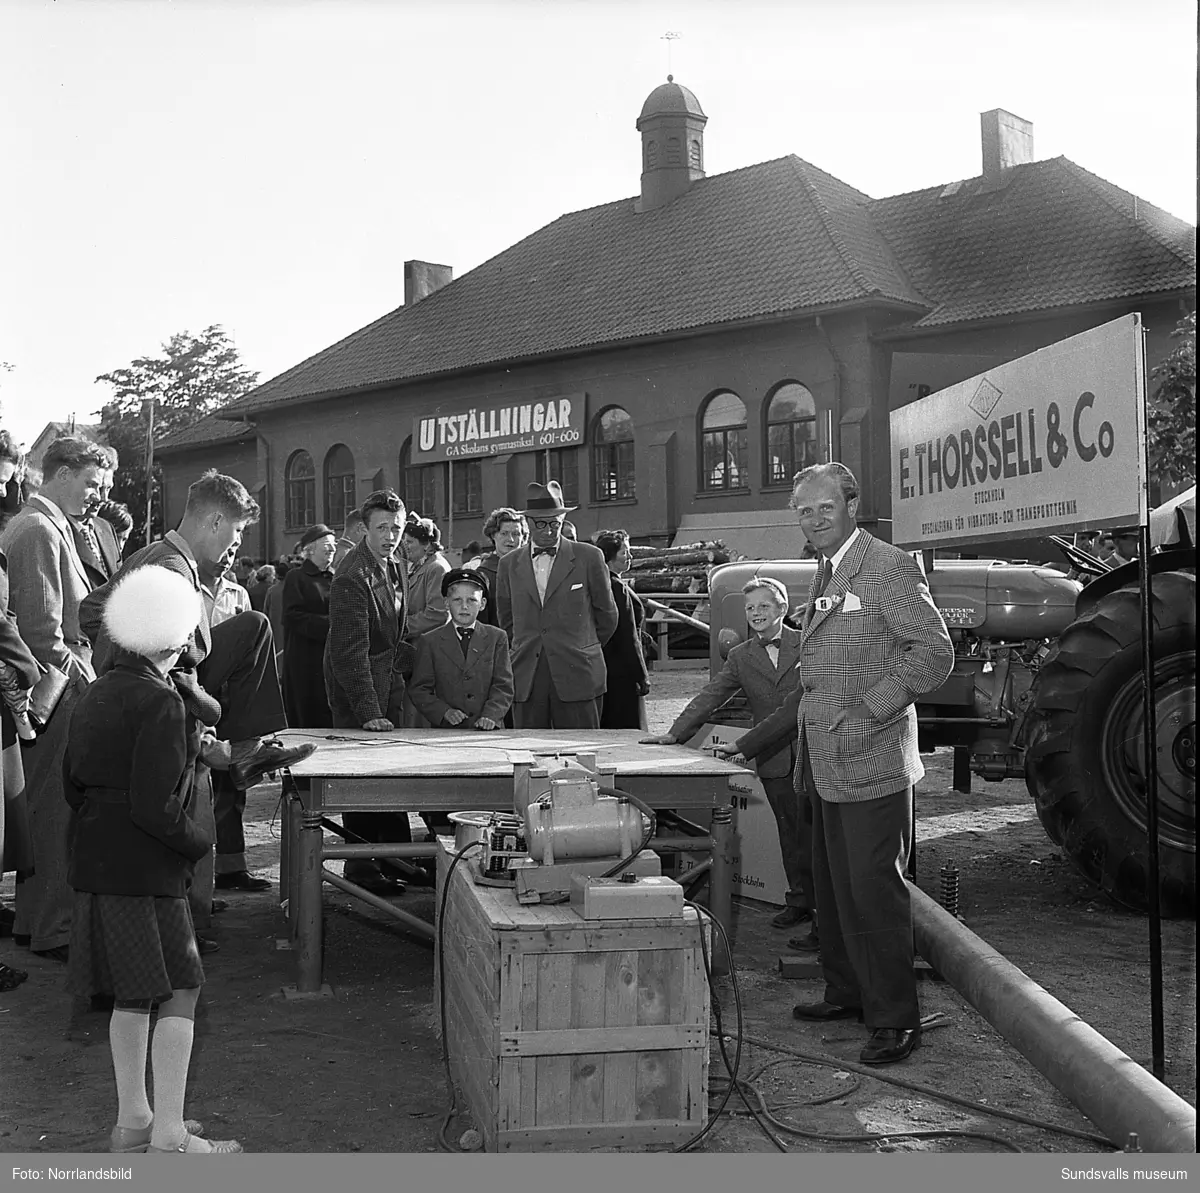 Sundsvallsmässan 1954, i en monter vid GA-skolan visar E. Thorsell & Co traktorer och maskiner. Fotograferat för Bydalens mekaniska.